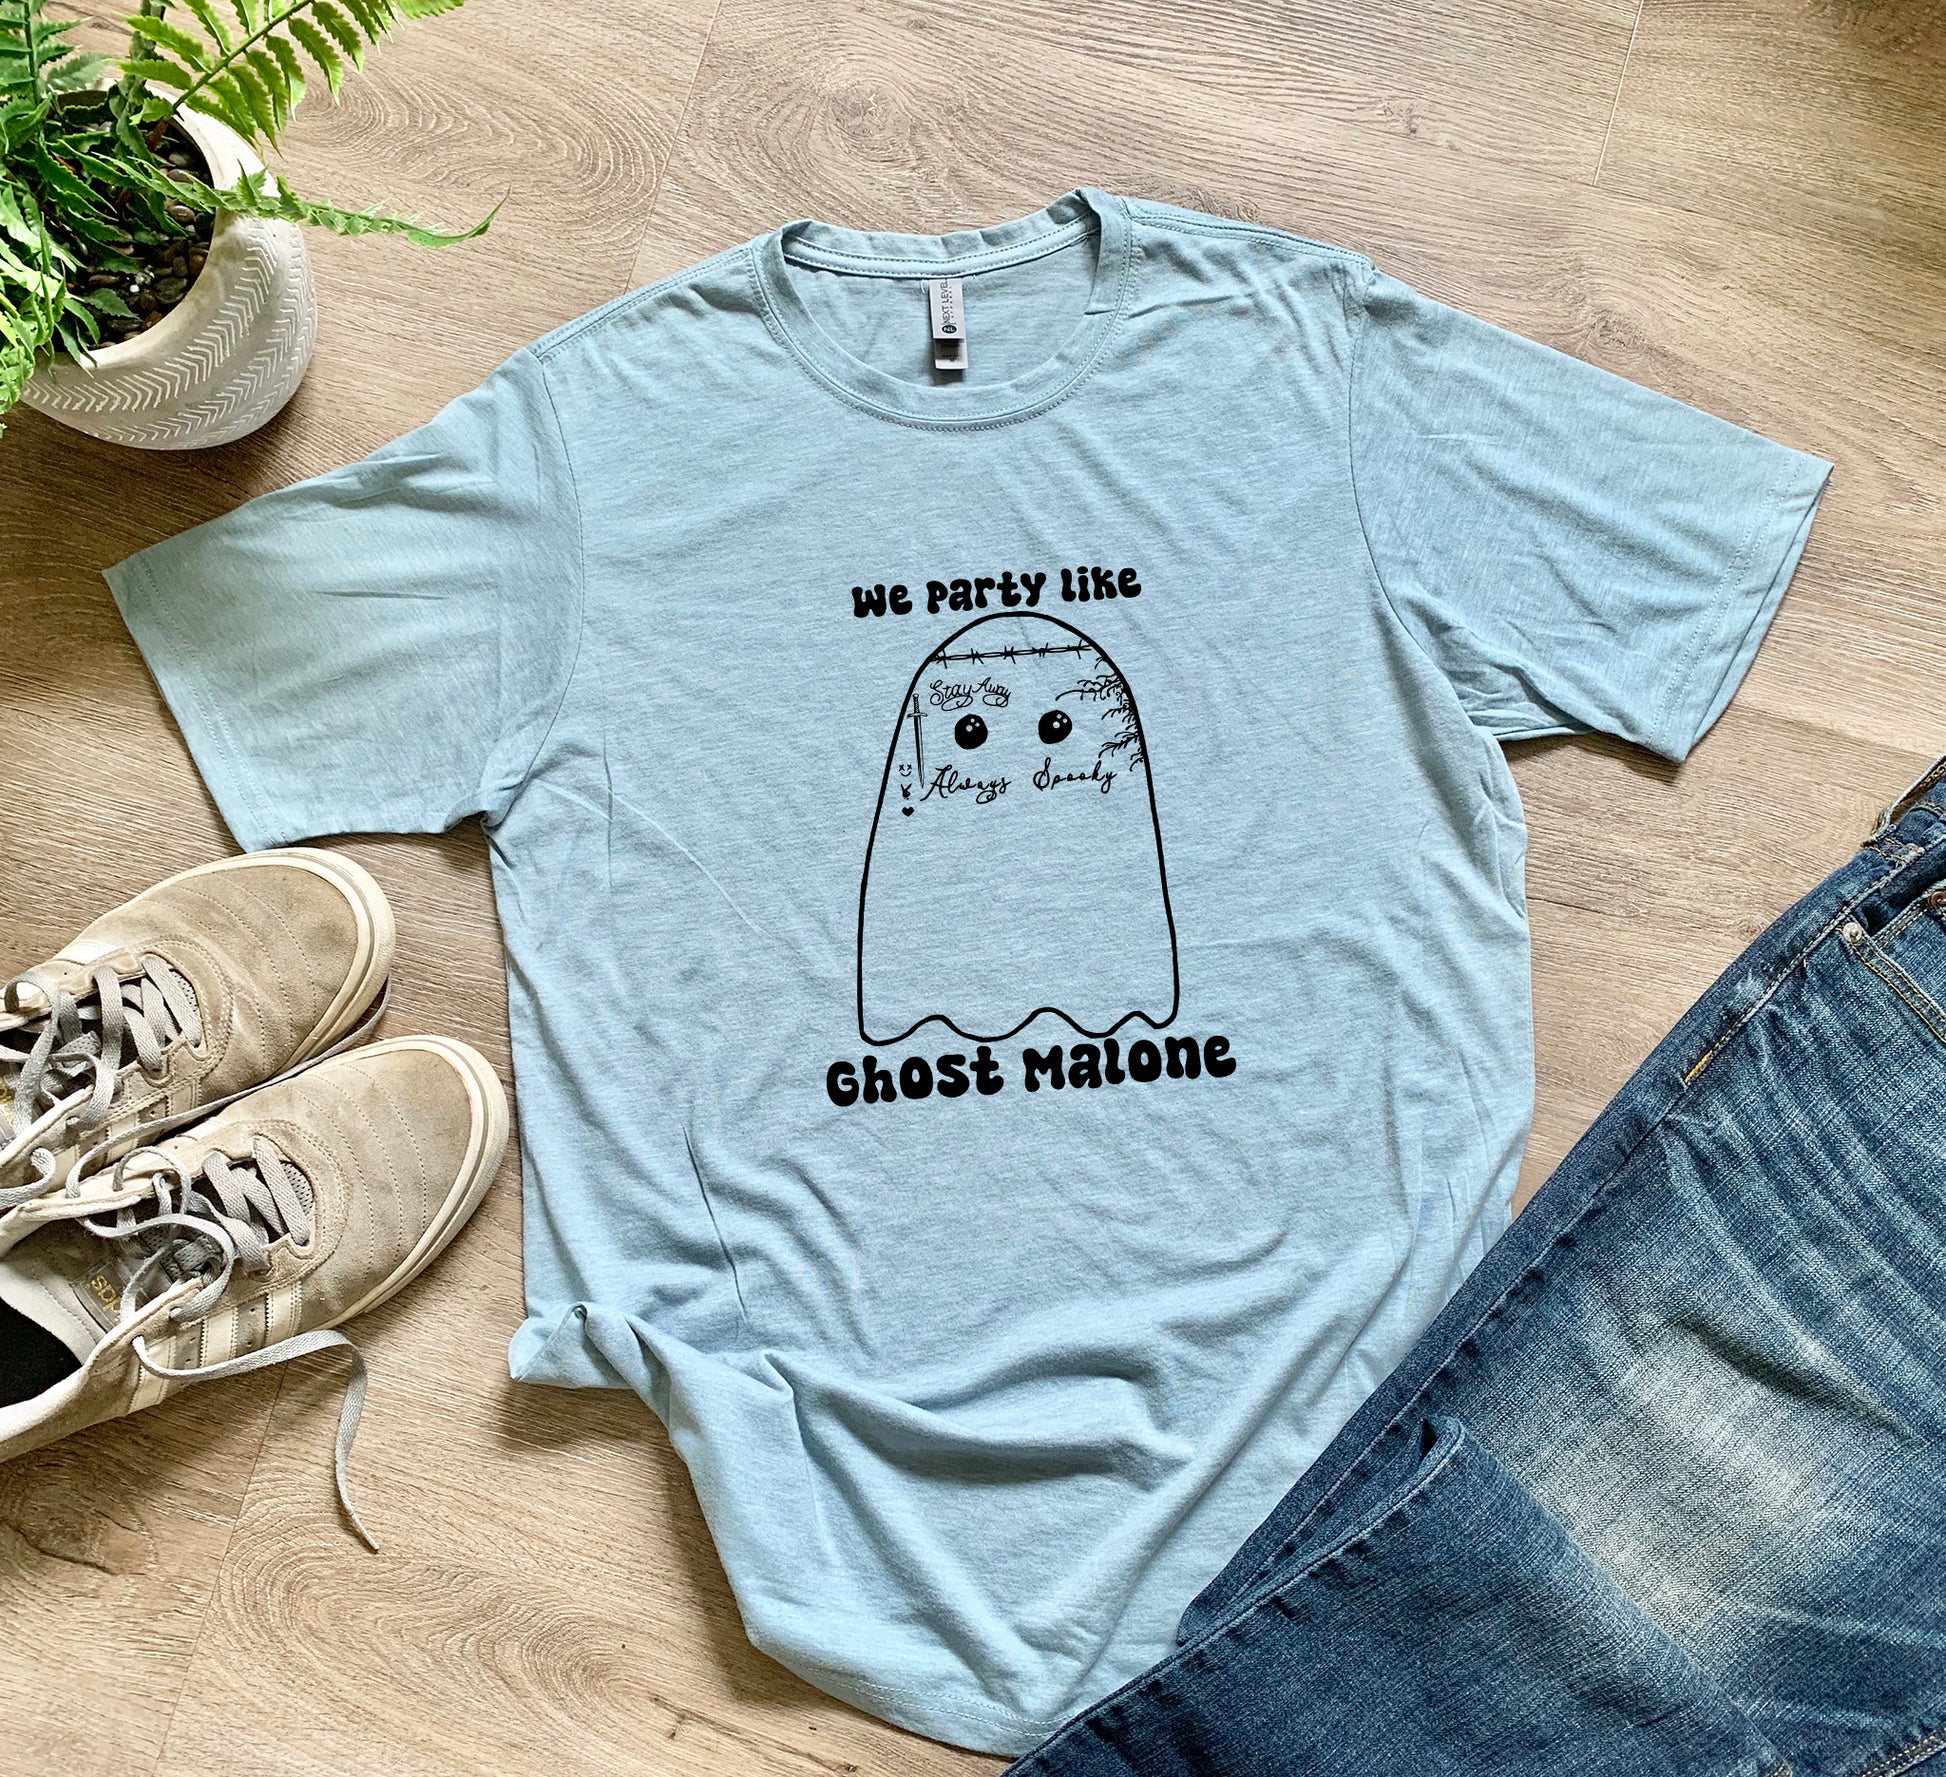 a t - shirt with a ghost on it next to a pair of jeans